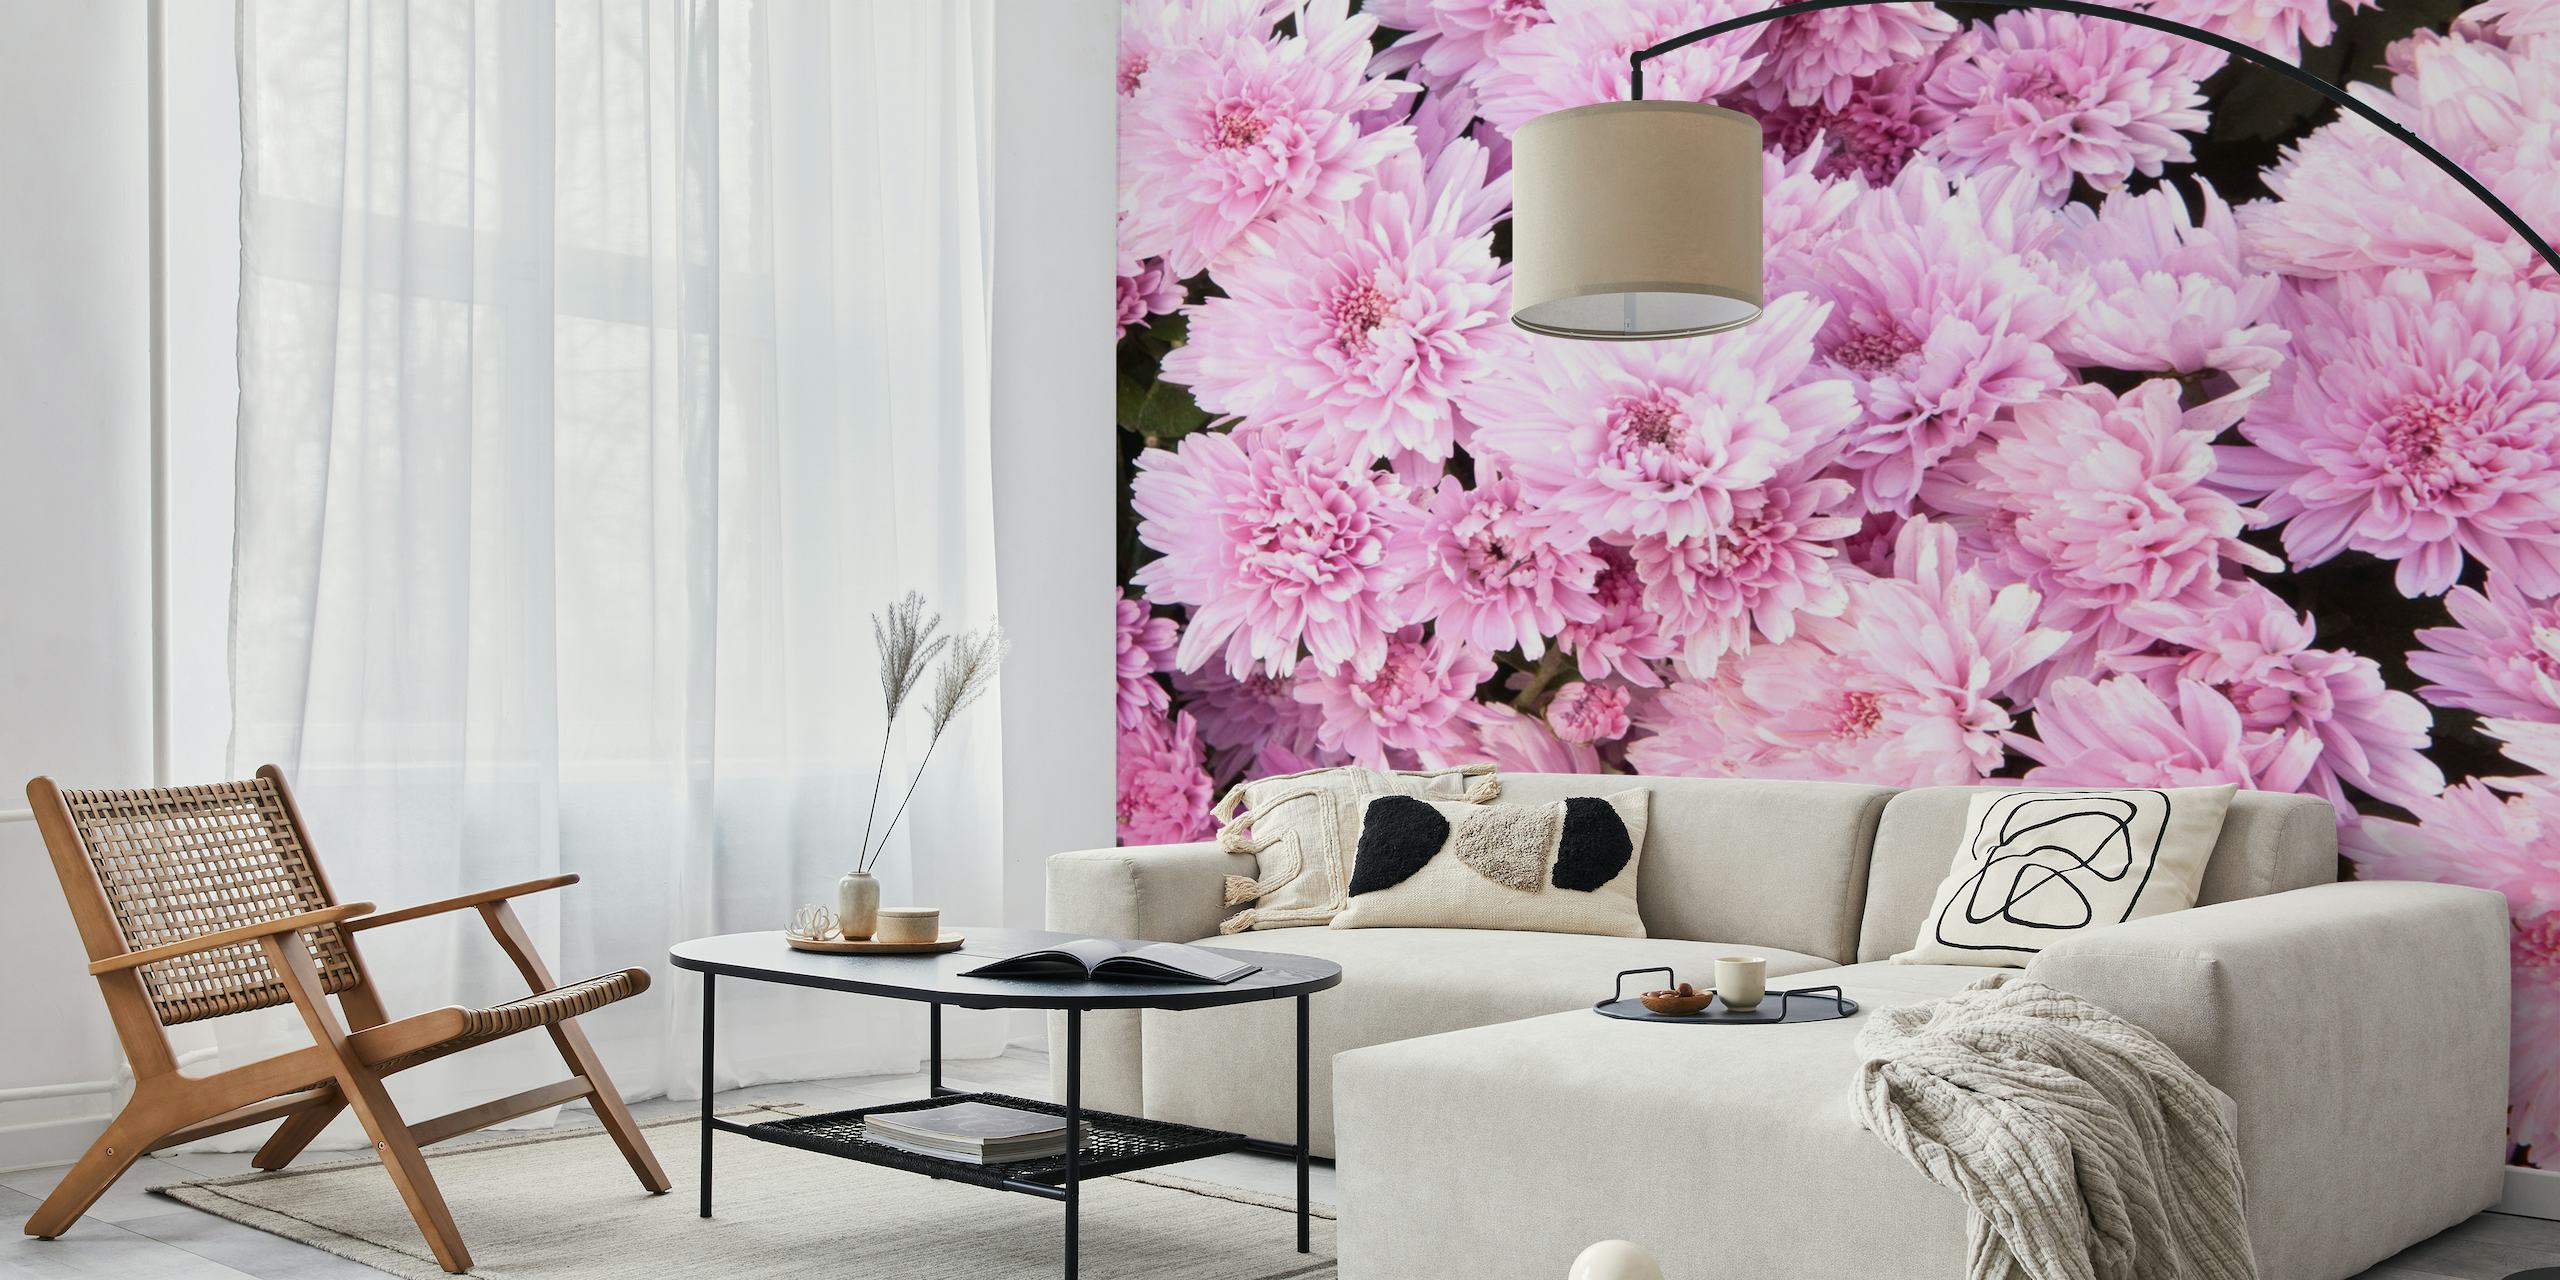 Tenui fiori di crisantemo rosa riempiono la cornice, creando un lussureggiante murale floreale